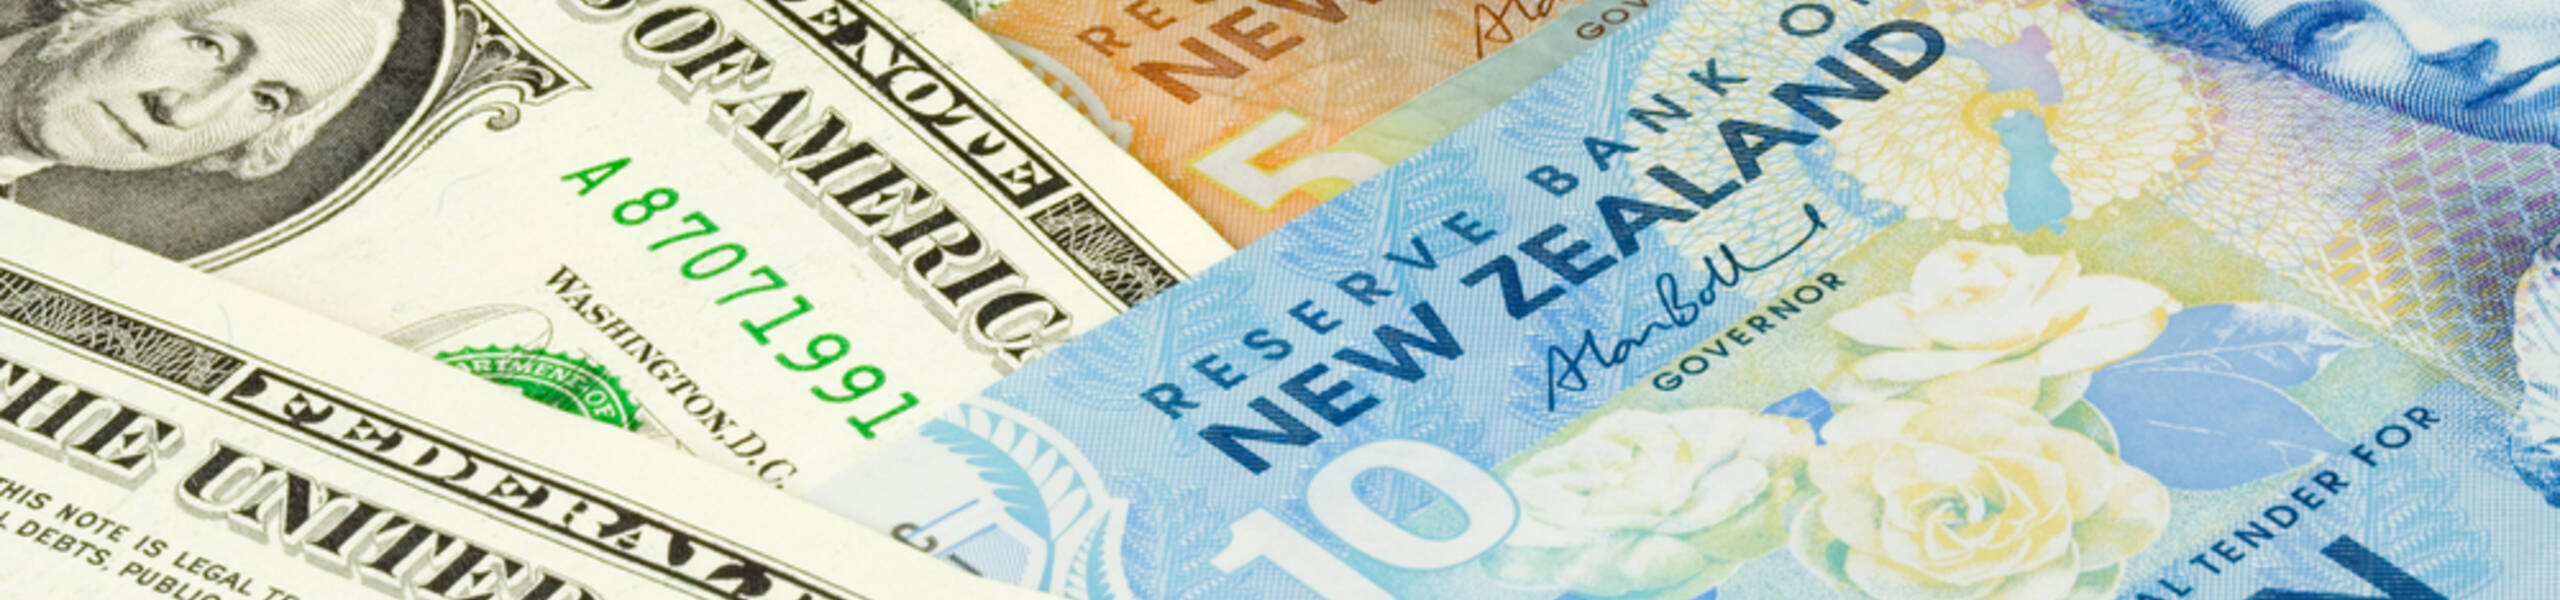 Kế hoạch giao dịch cặp ngoại tệ NZDUSD ngày 18/03/2019